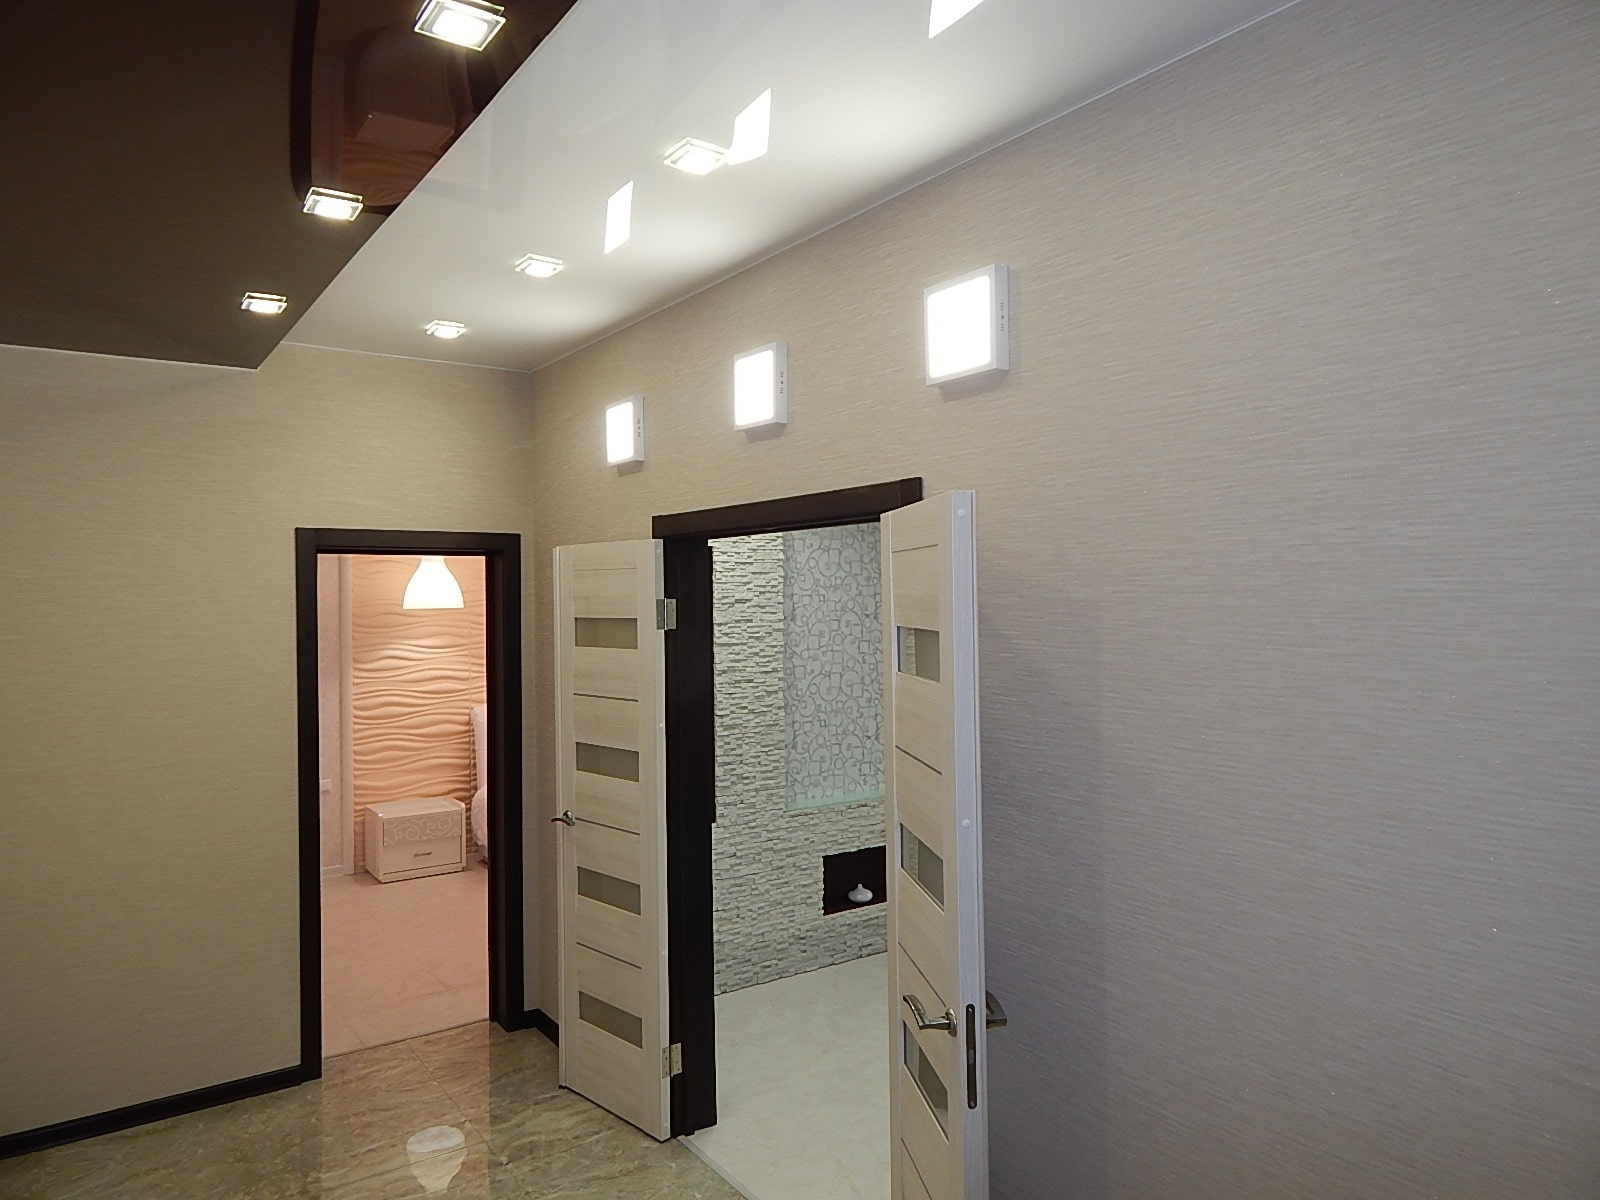 stretch ceiling corridor design